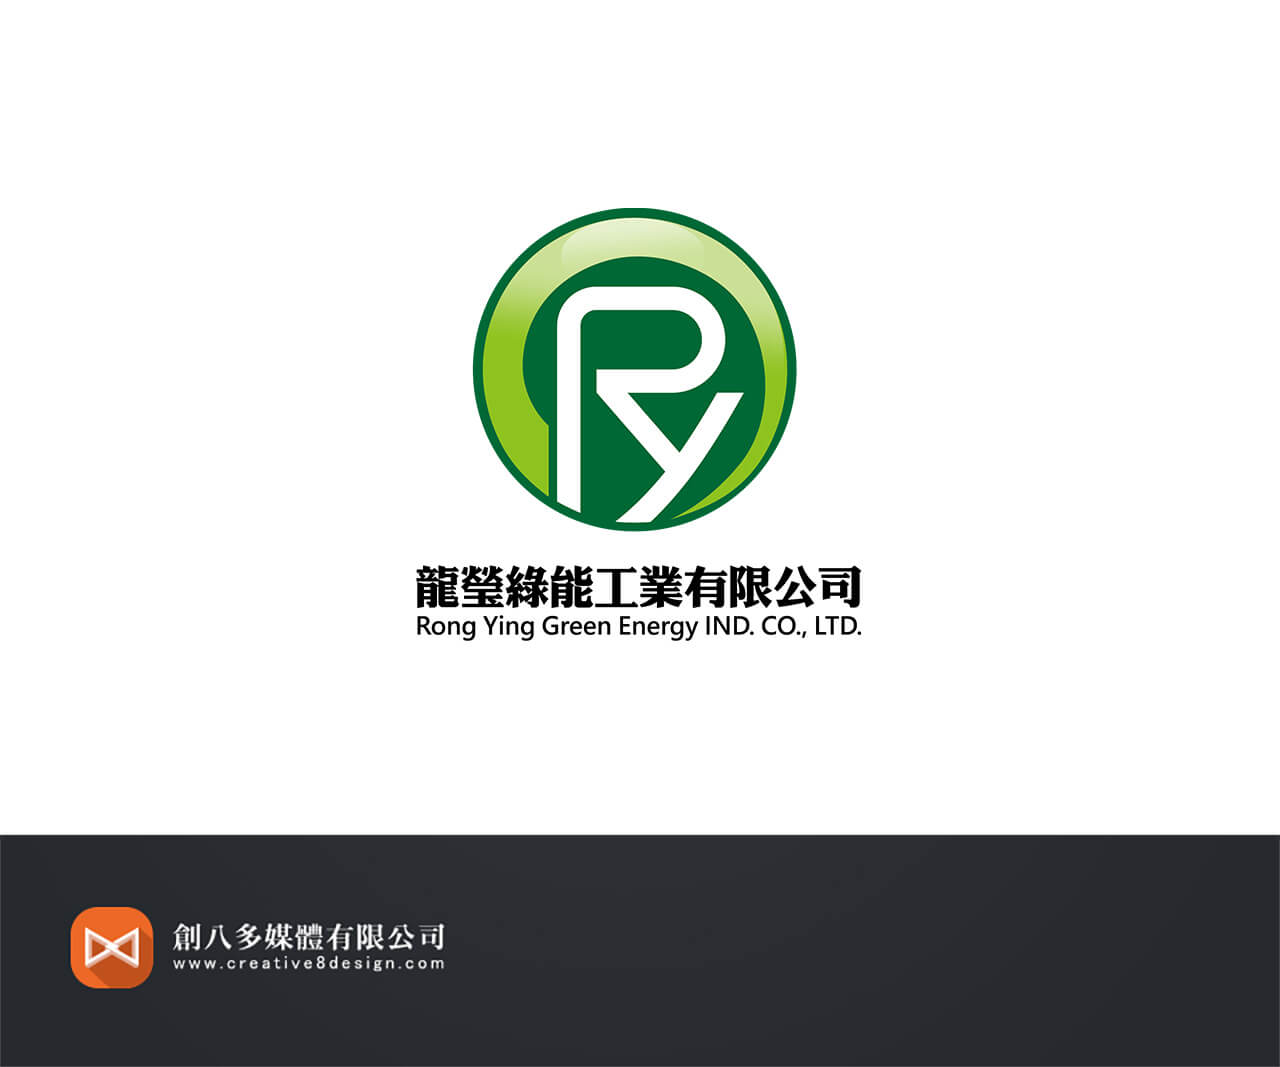 龍瑩綠能工業有限公司的LOGO設計示意圖